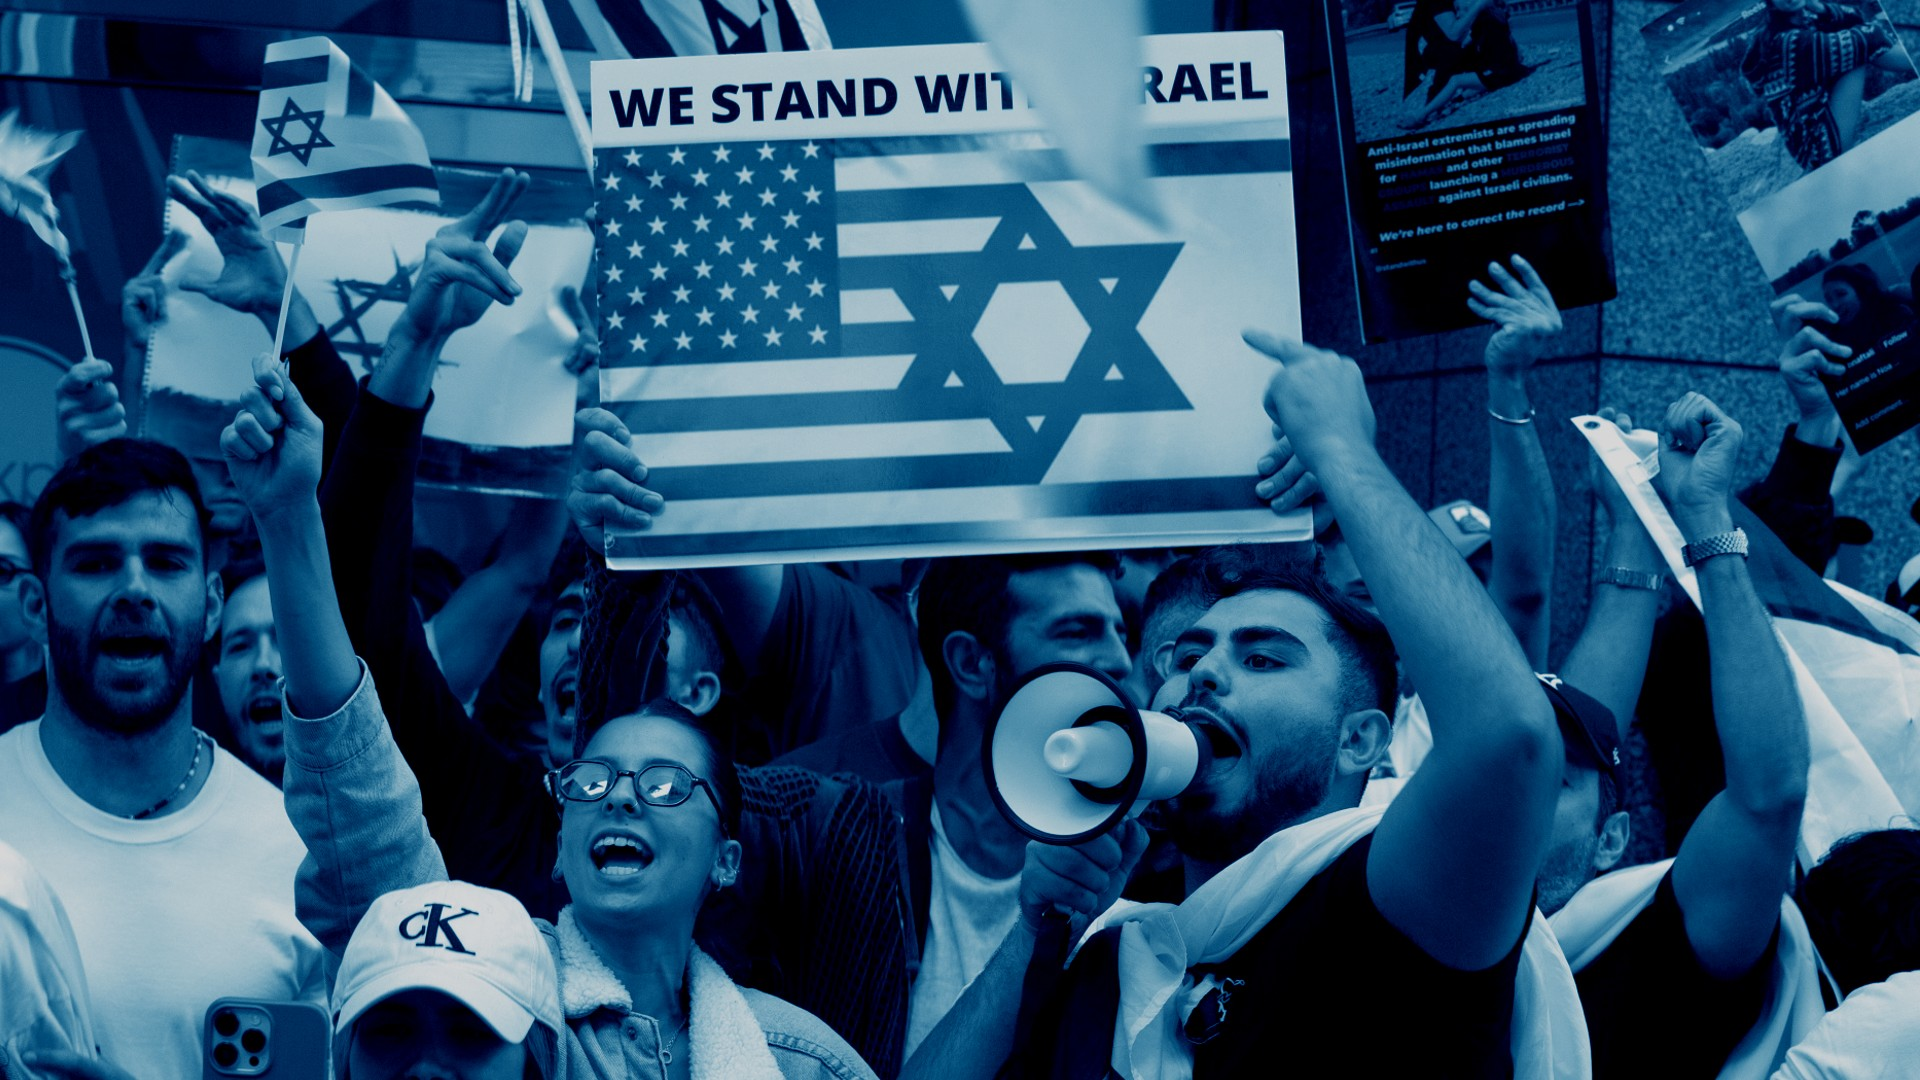 "שיקפצו כולם, תלינו דגל ישראל על הבית שלי בקמפוס בסטנפורד"